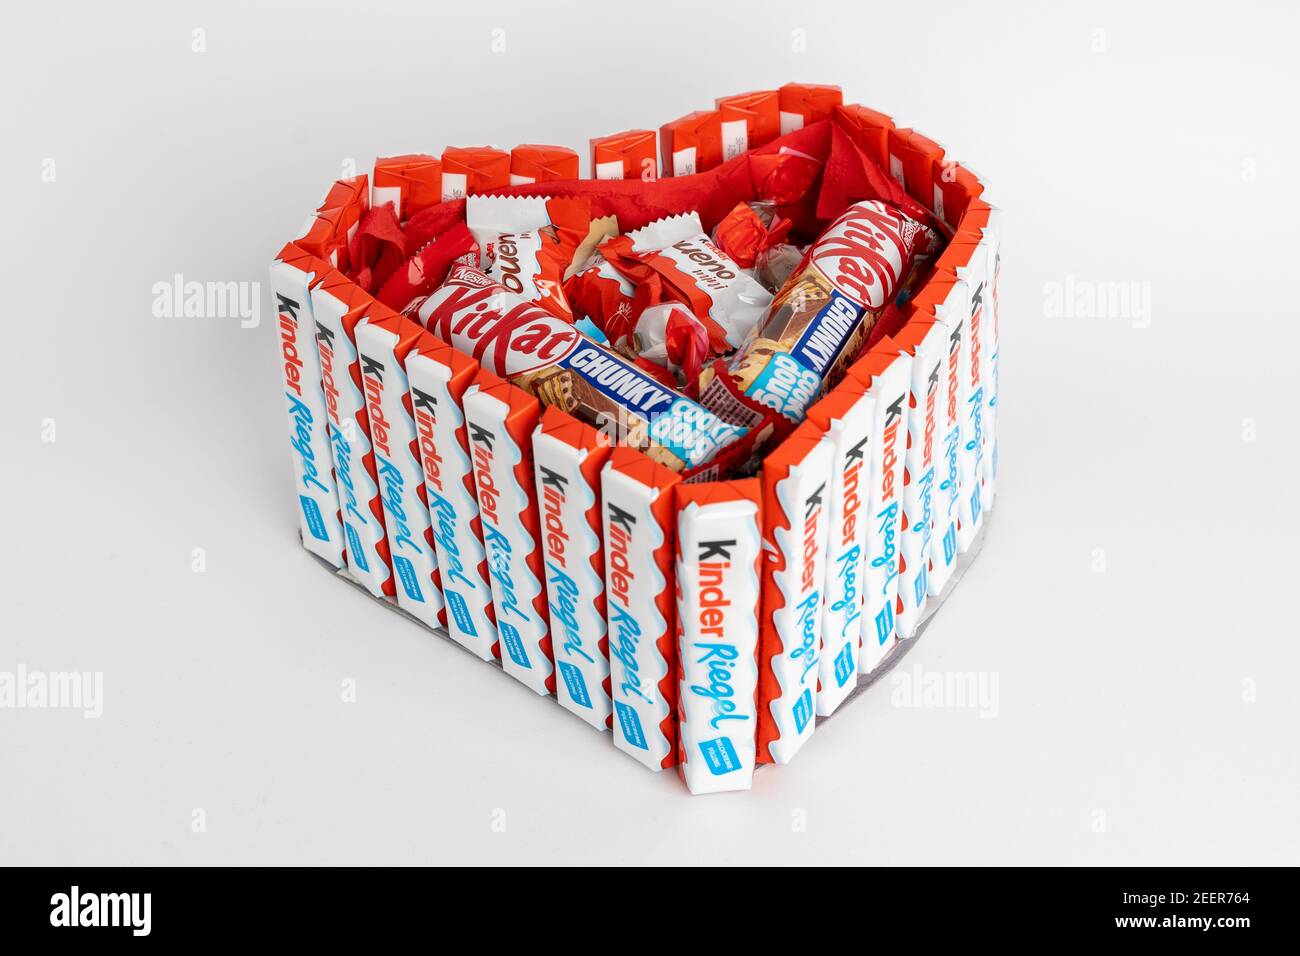 Ferrero kinder immagini e fotografie stock ad alta risoluzione - Alamy